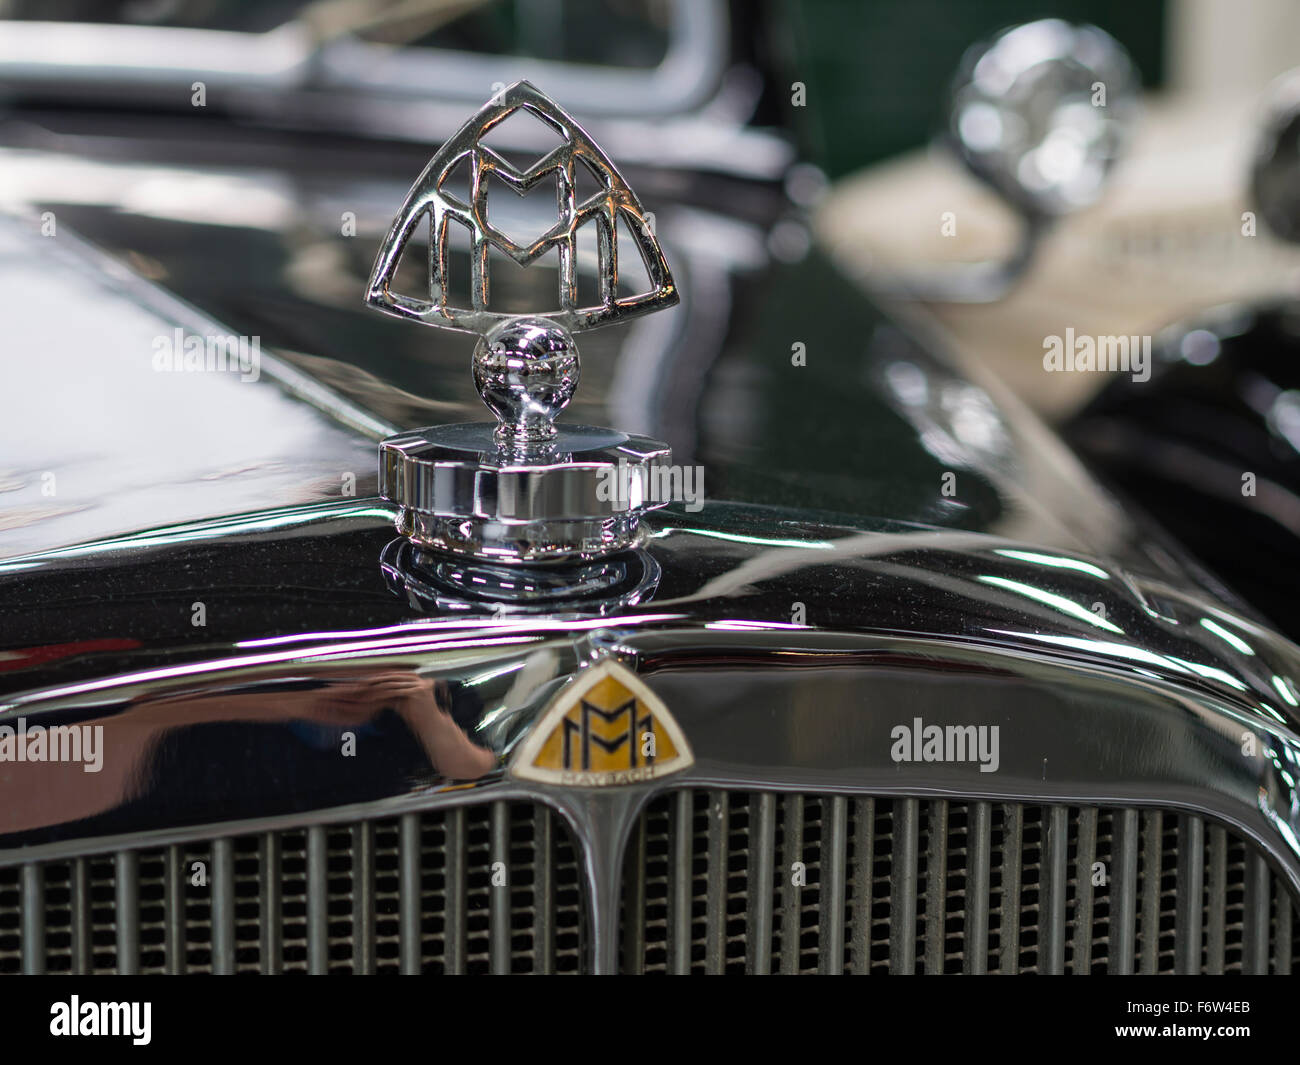 Hood ornament of a historic Maybach veteran car Stock Photo